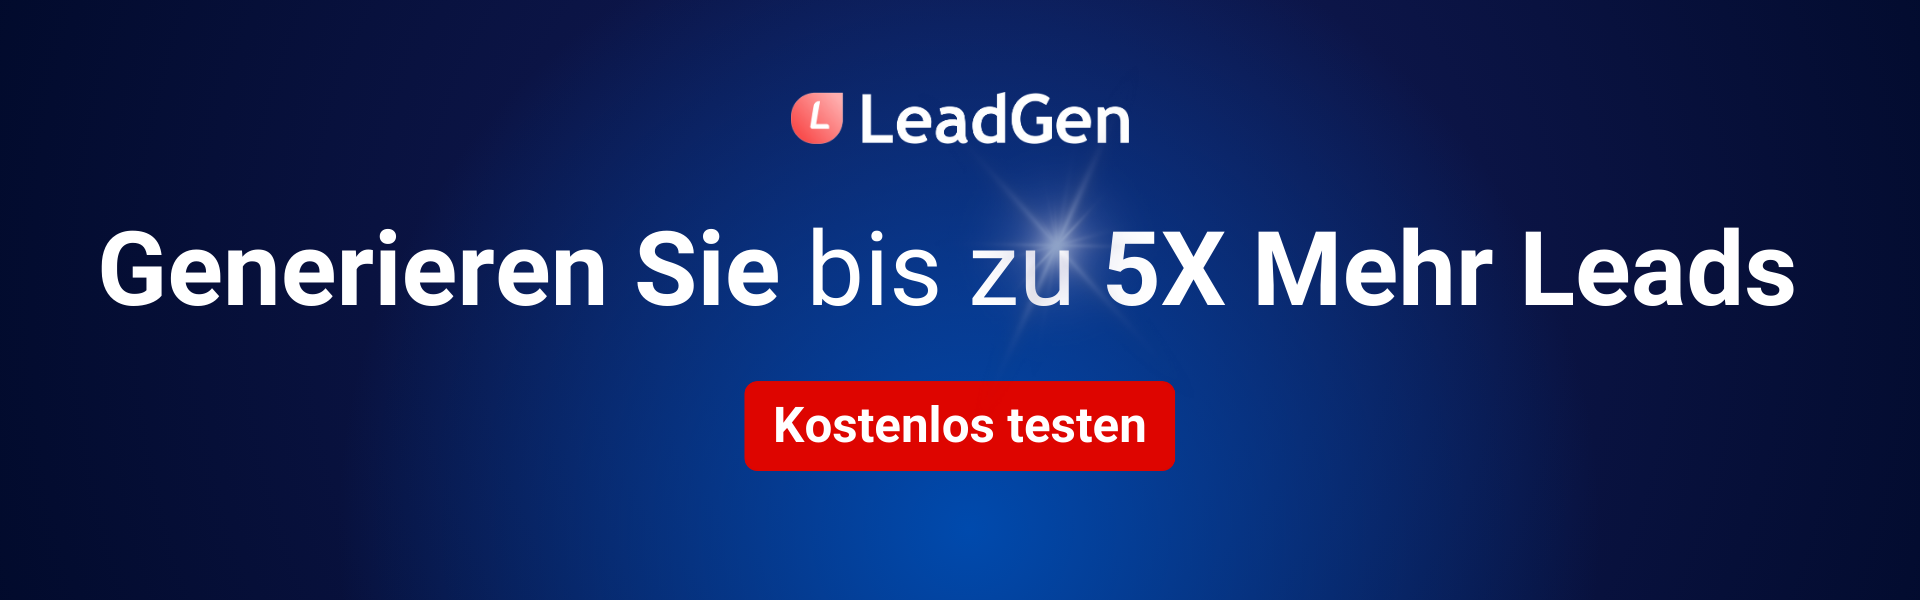 Generieren Sie bis zu 5X mehr Leads - LeadGen App banner 1